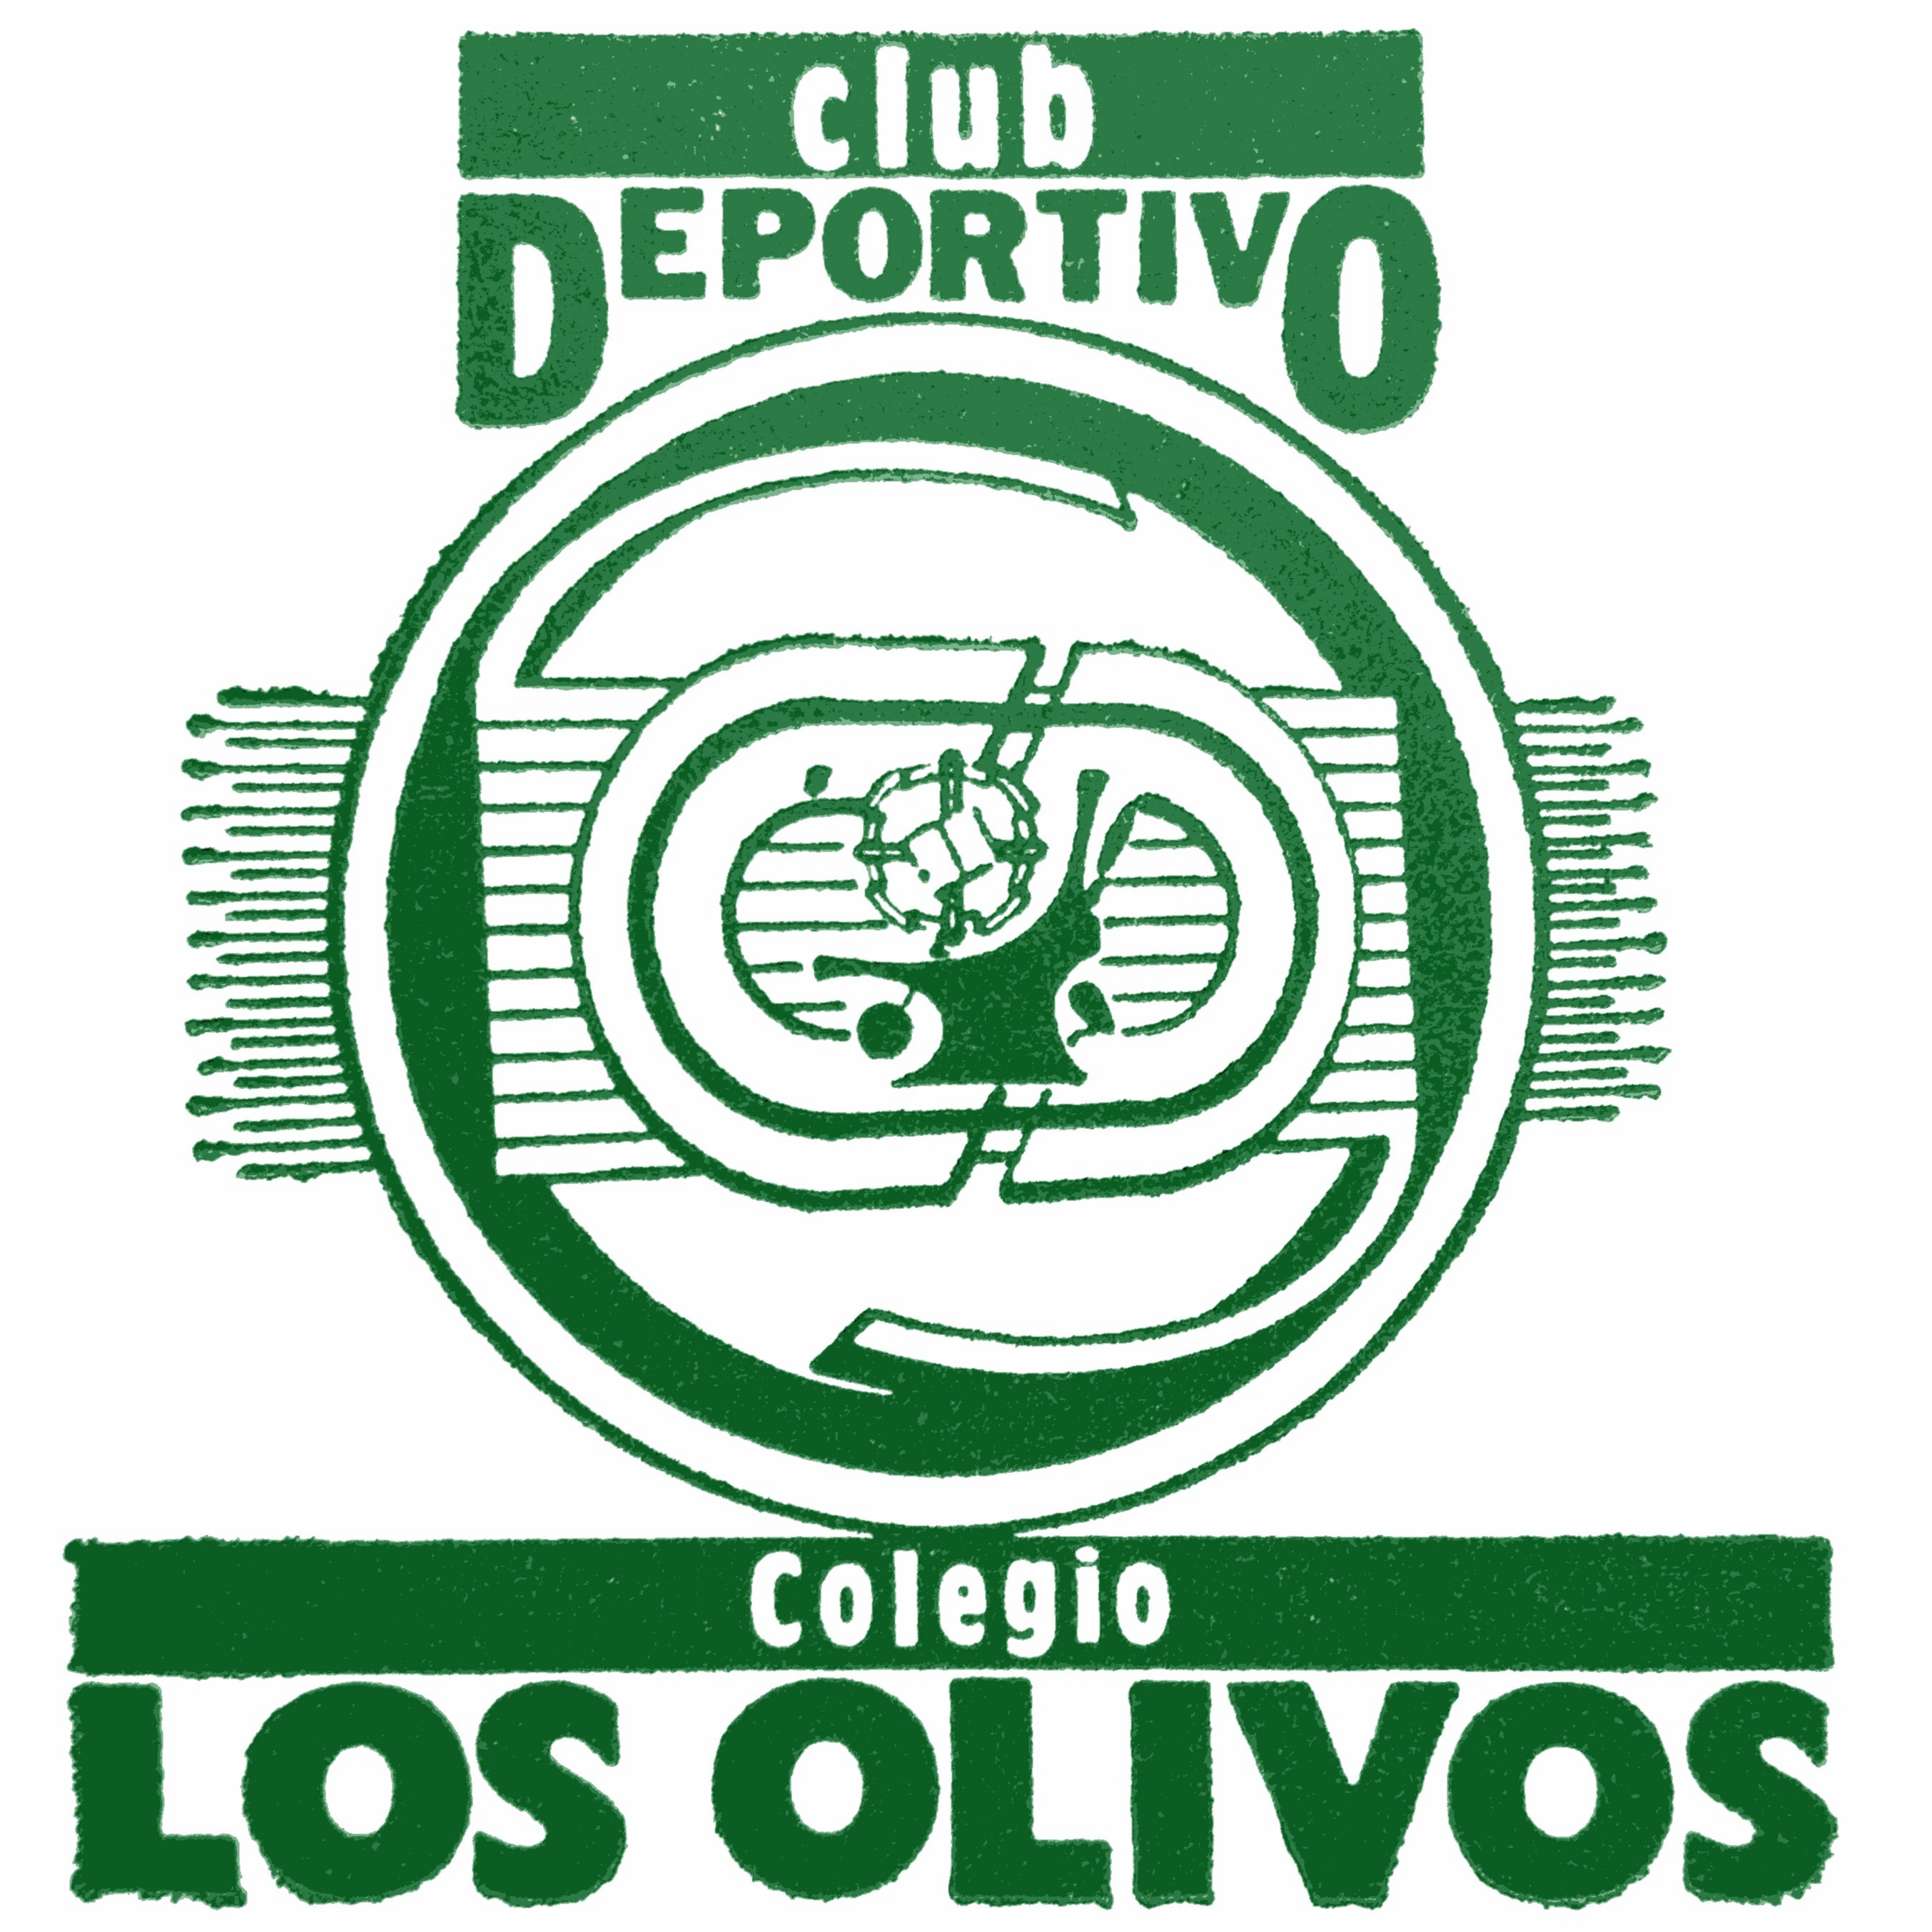 CLUB DEPORTIVO COLEGIO LOS OLIVOS